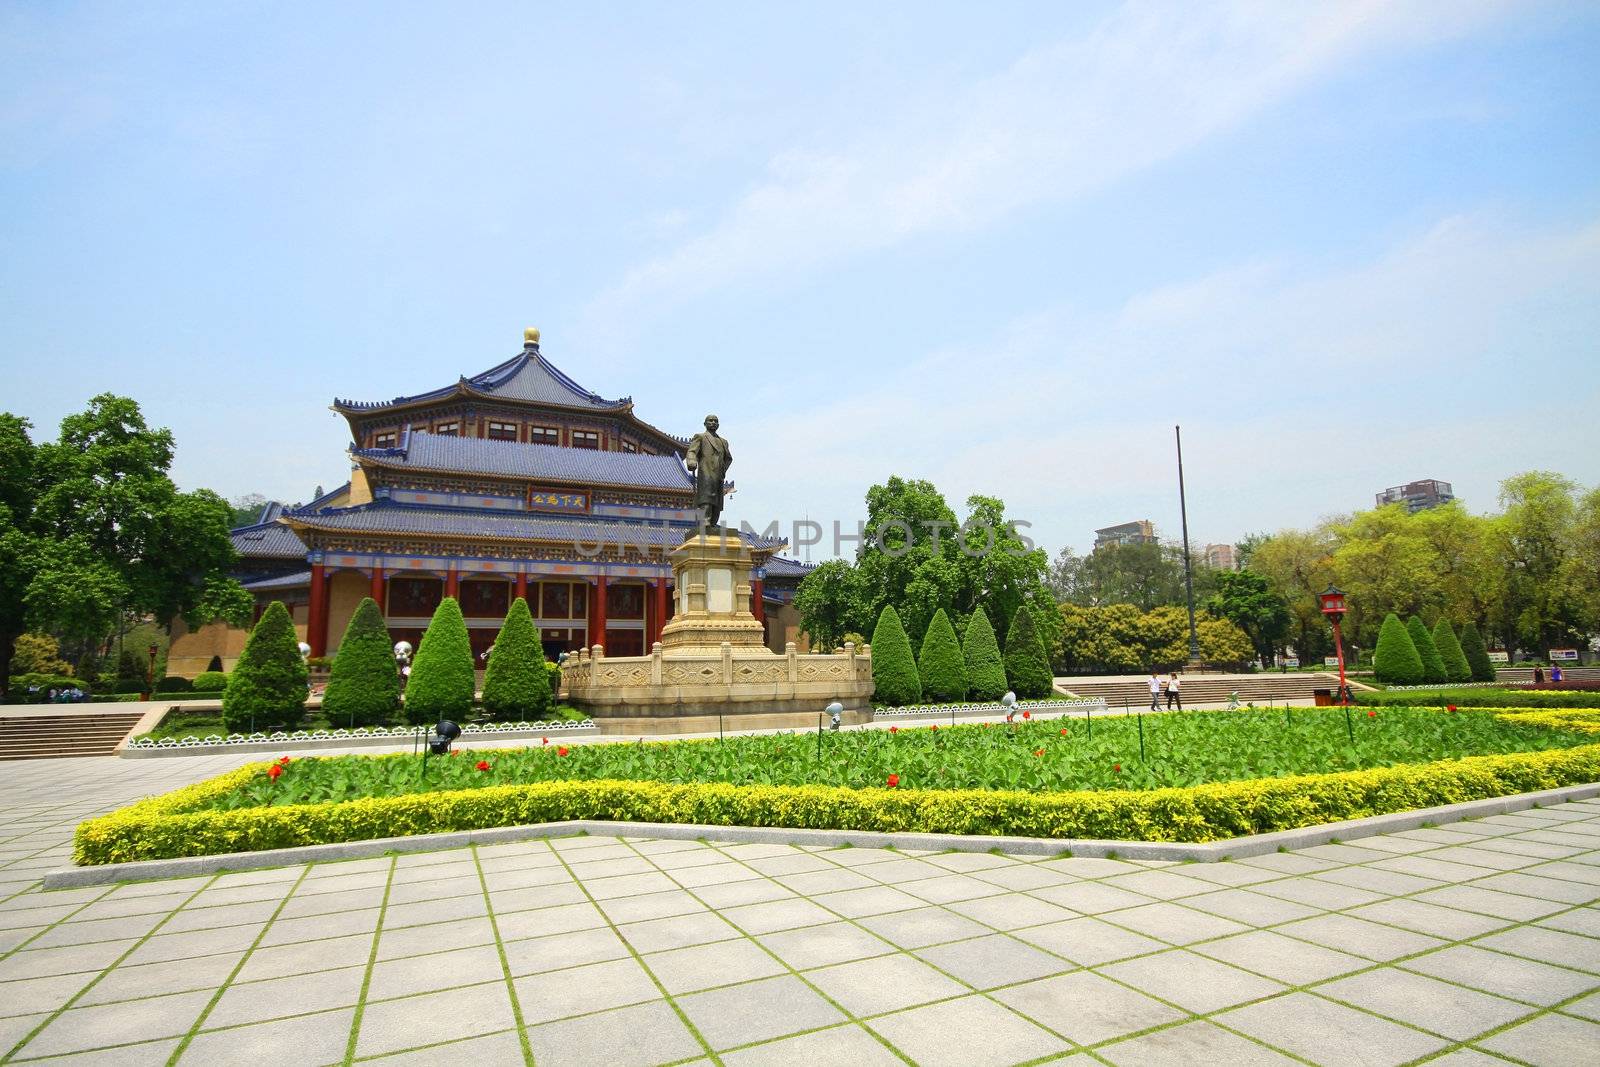 Sun Yat-sen Memorial Hall in Guangzhou, China  by kawing921